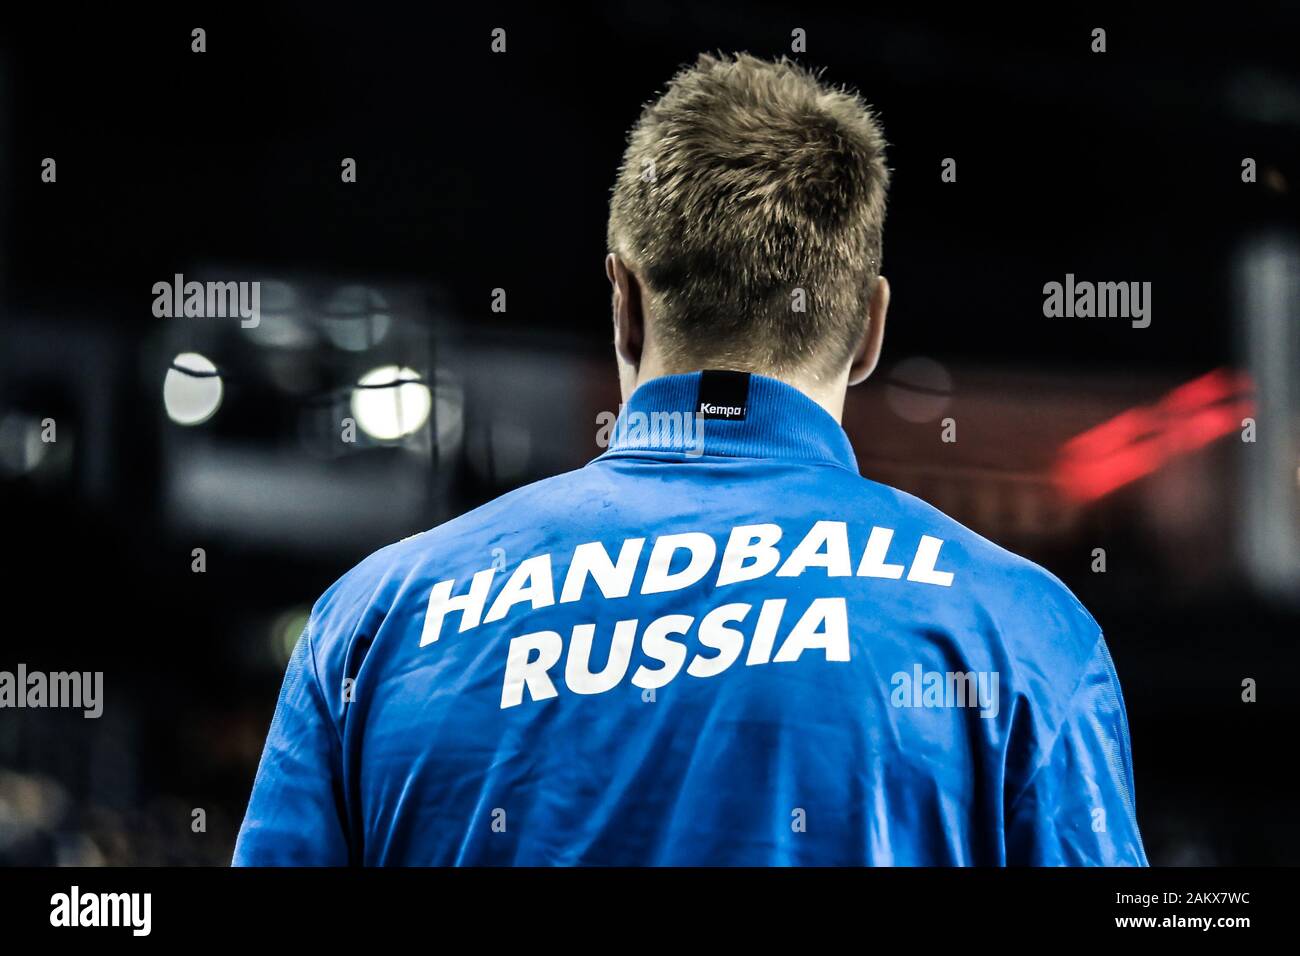 Berlín, Alemania, 15 de enero de 2019: Un jugador de balonmano ruso antes de un partido durante la Copa Mundial de Balonmano Masculino Foto de stock